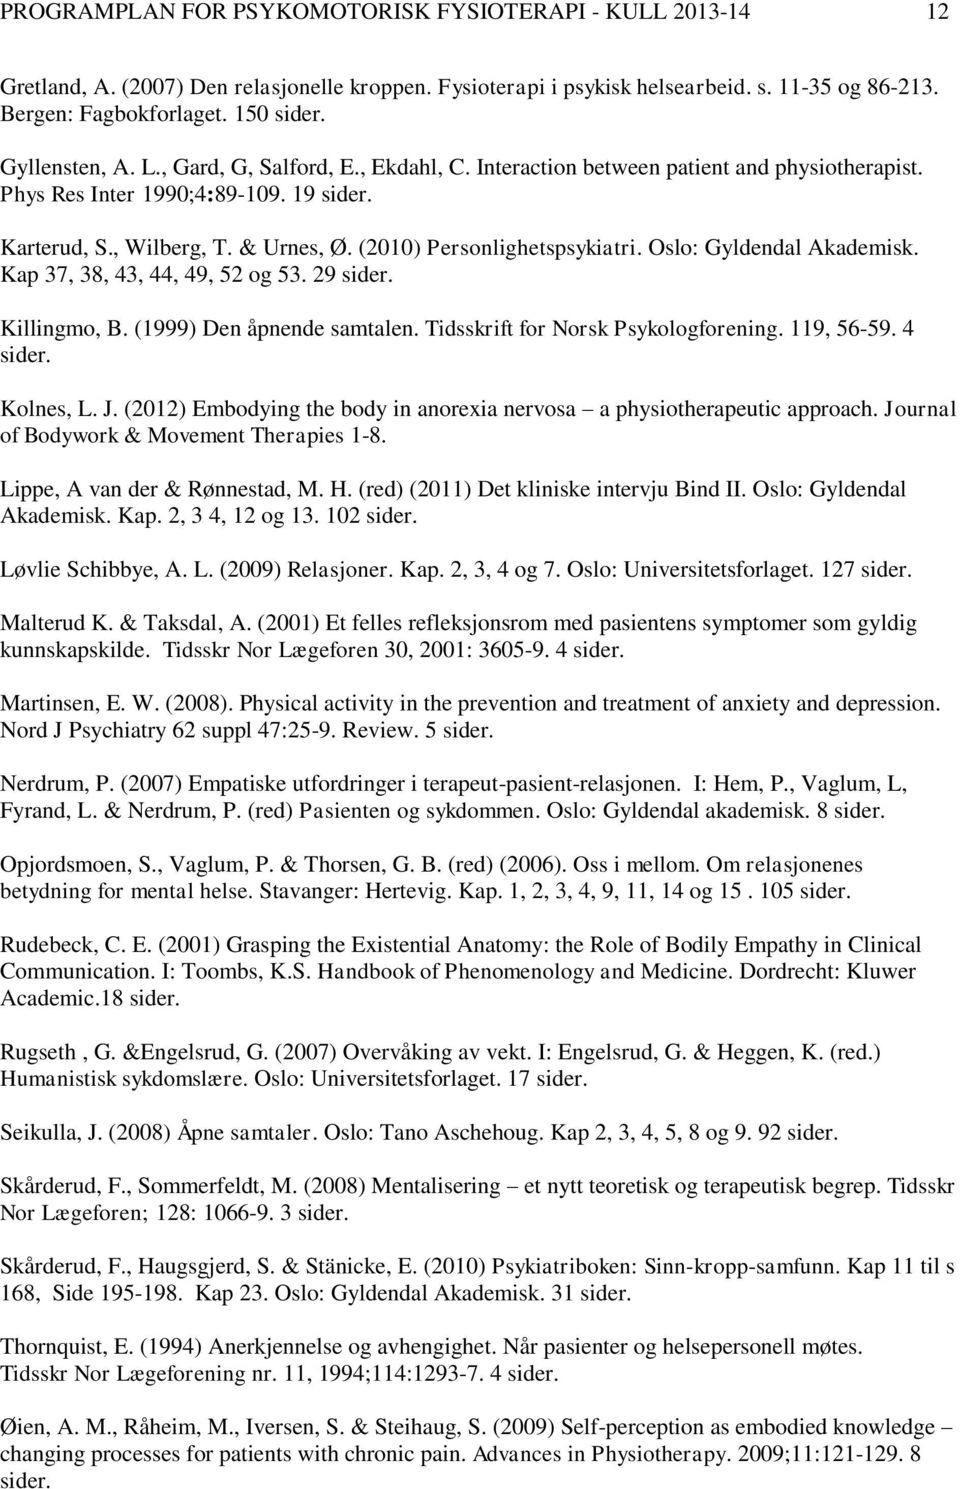 (2010) Personlighetspsykiatri. Oslo: Gyldendal Akademisk. Kap 37, 38, 43, 44, 49, 52 og 53. 29 sider. Killingmo, B. (1999) Den åpnende samtalen. Tidsskrift for Norsk Psykologforening. 119, 56-59.